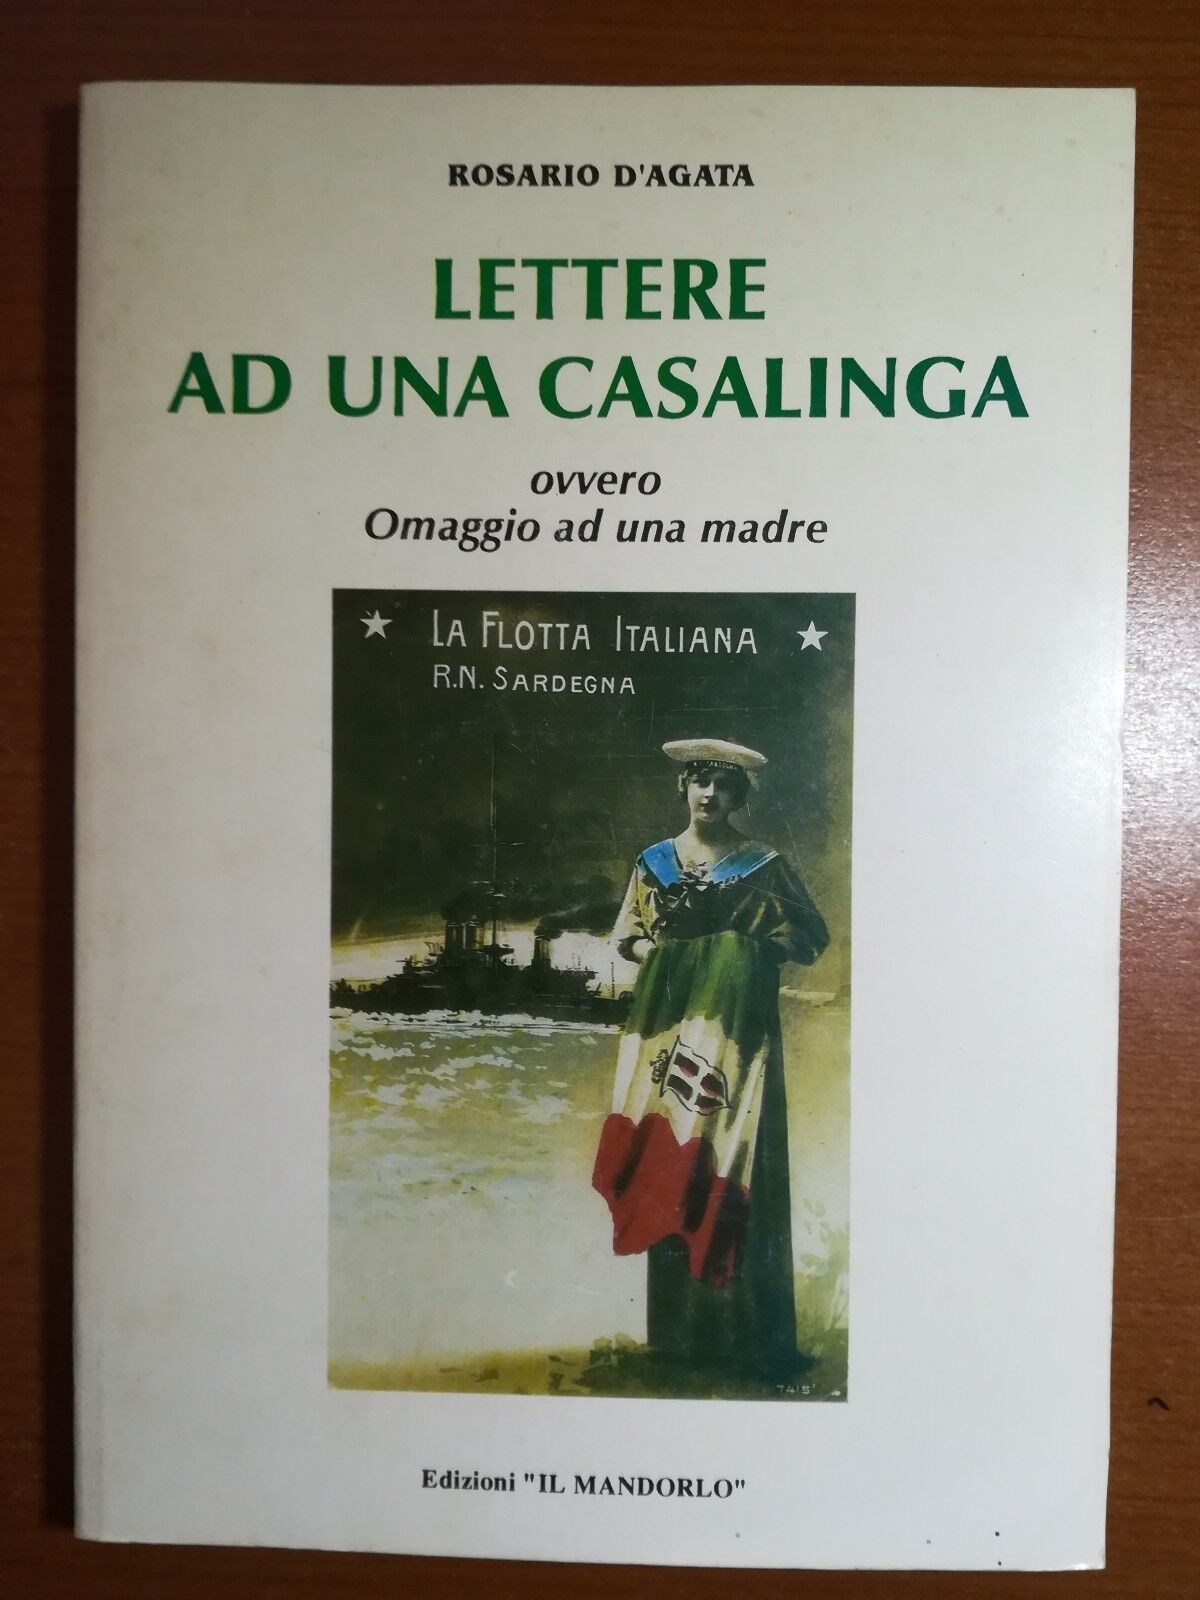 Lettere ad una casalinga - Rosario D'agata - Il mandorlo - 1997 - M